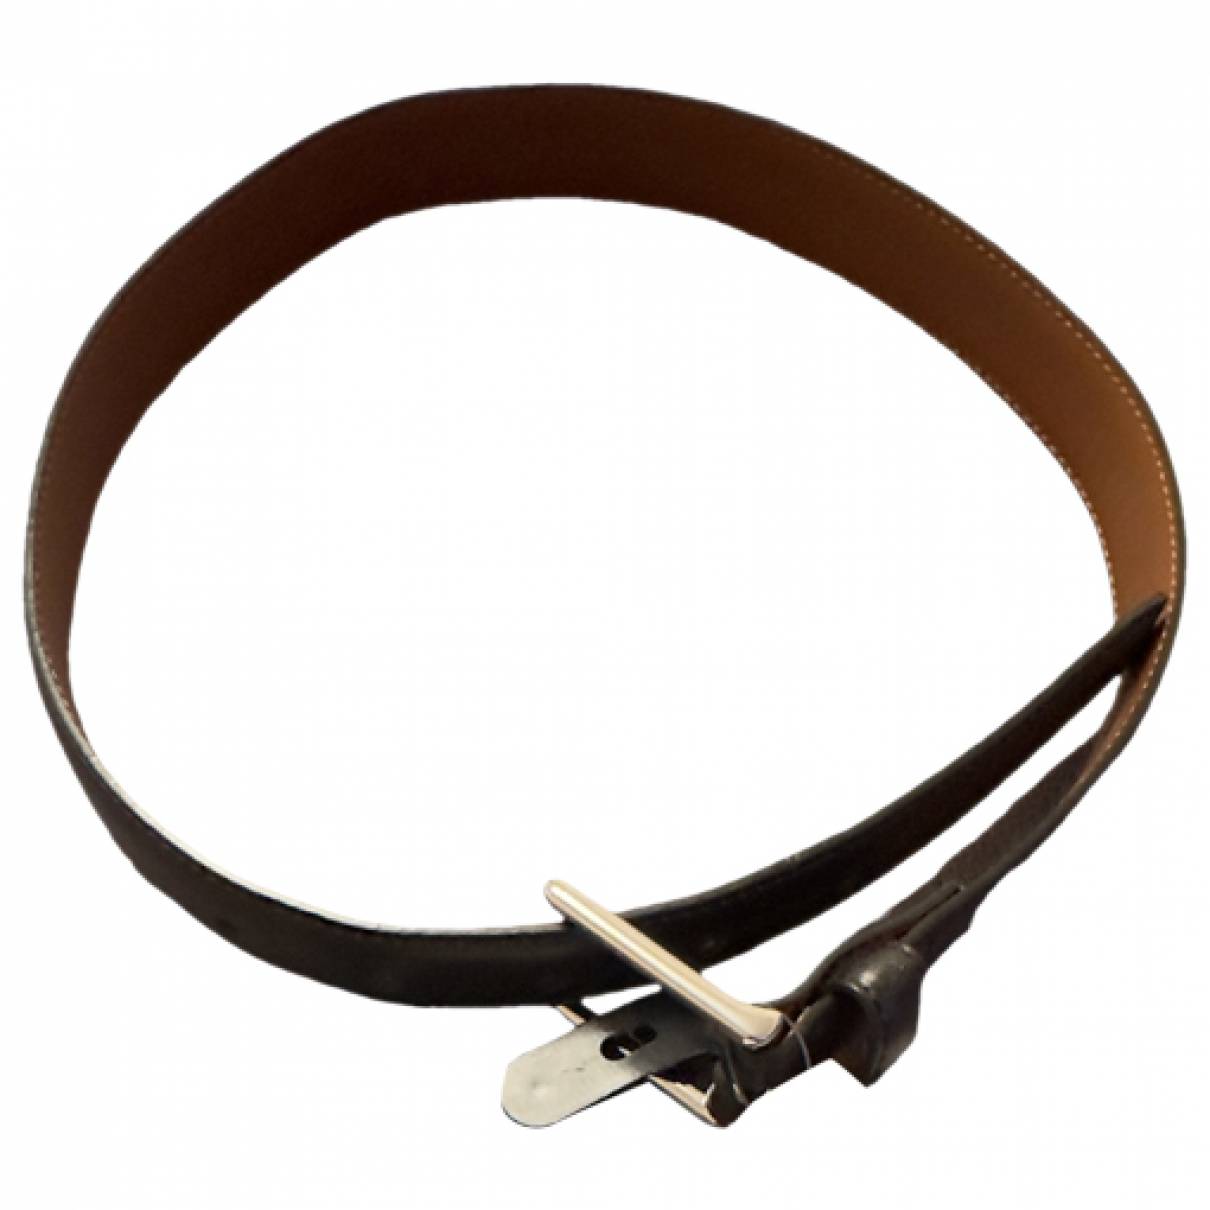 Leather belts/suspenders Ralph Lauren